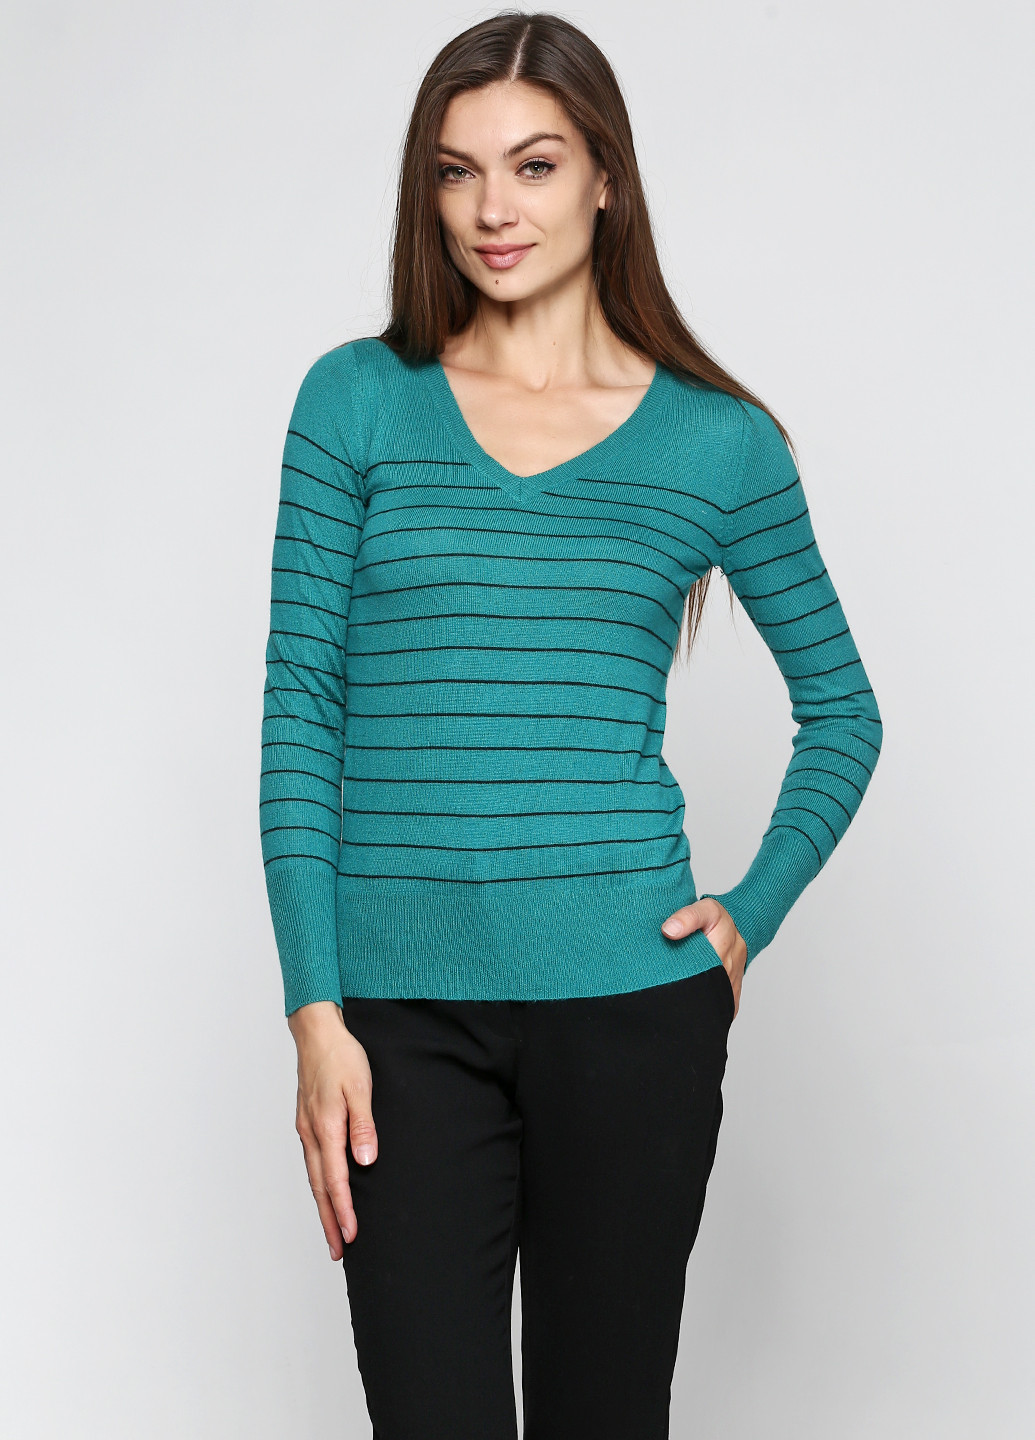 Зеленый демисезонный пуловер пуловер Mossimo Supply Co